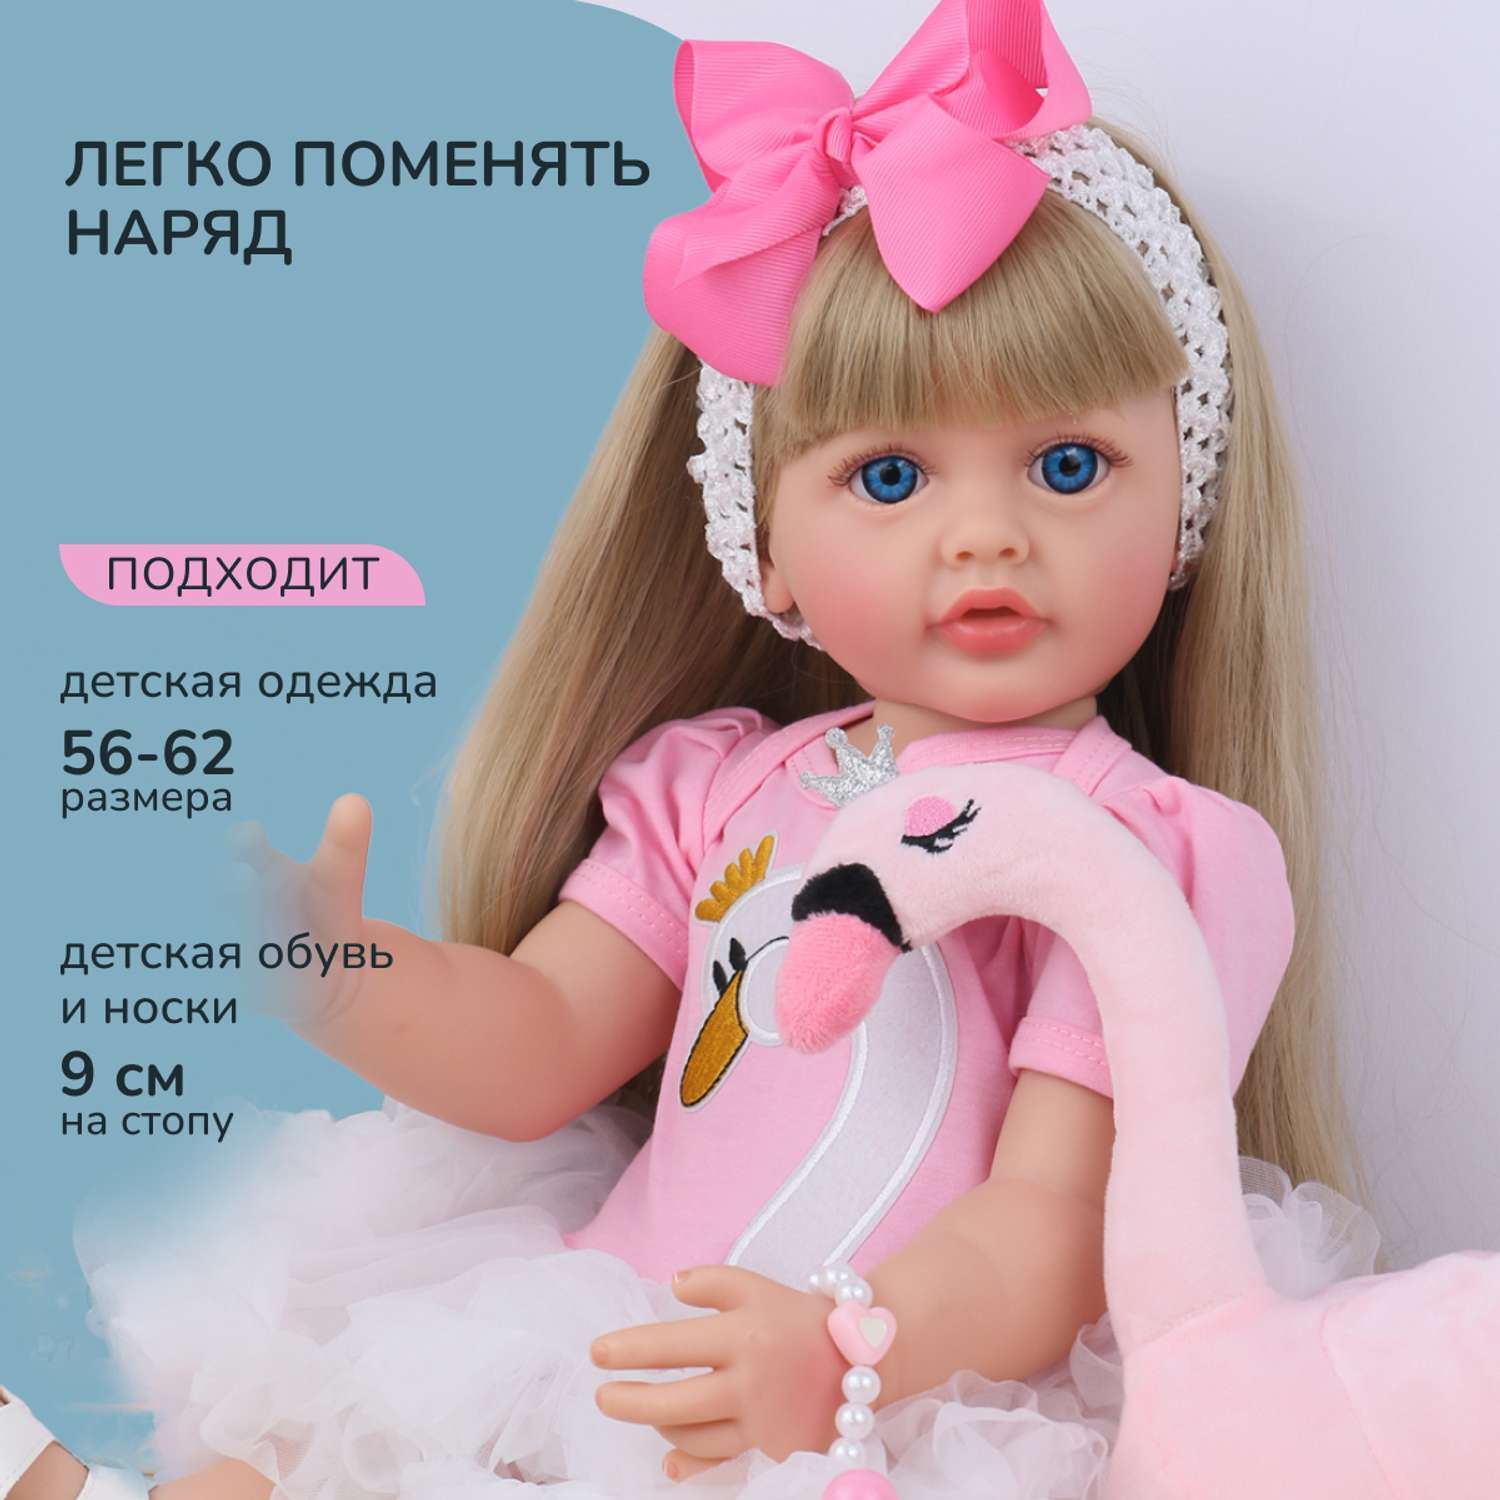 Кукла Реборн QA BABY Валерия девочка большая пупс набор игрушки для девочки 55 см 5513 - фото 12